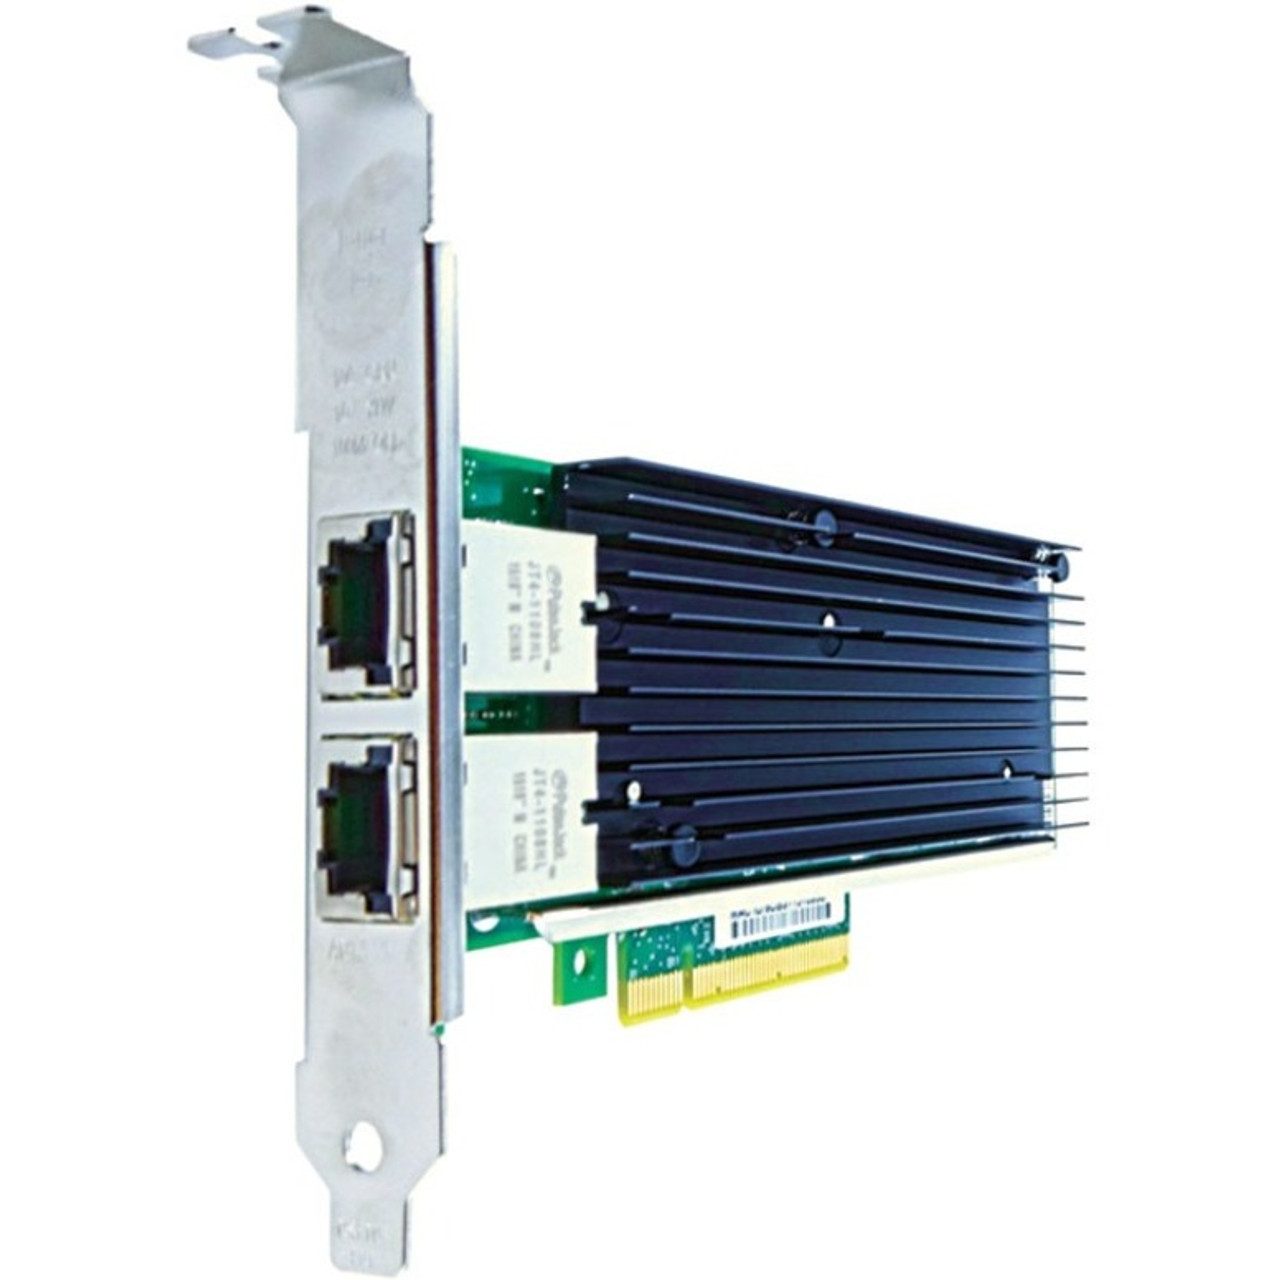 PCIE-2RJ4510-AX